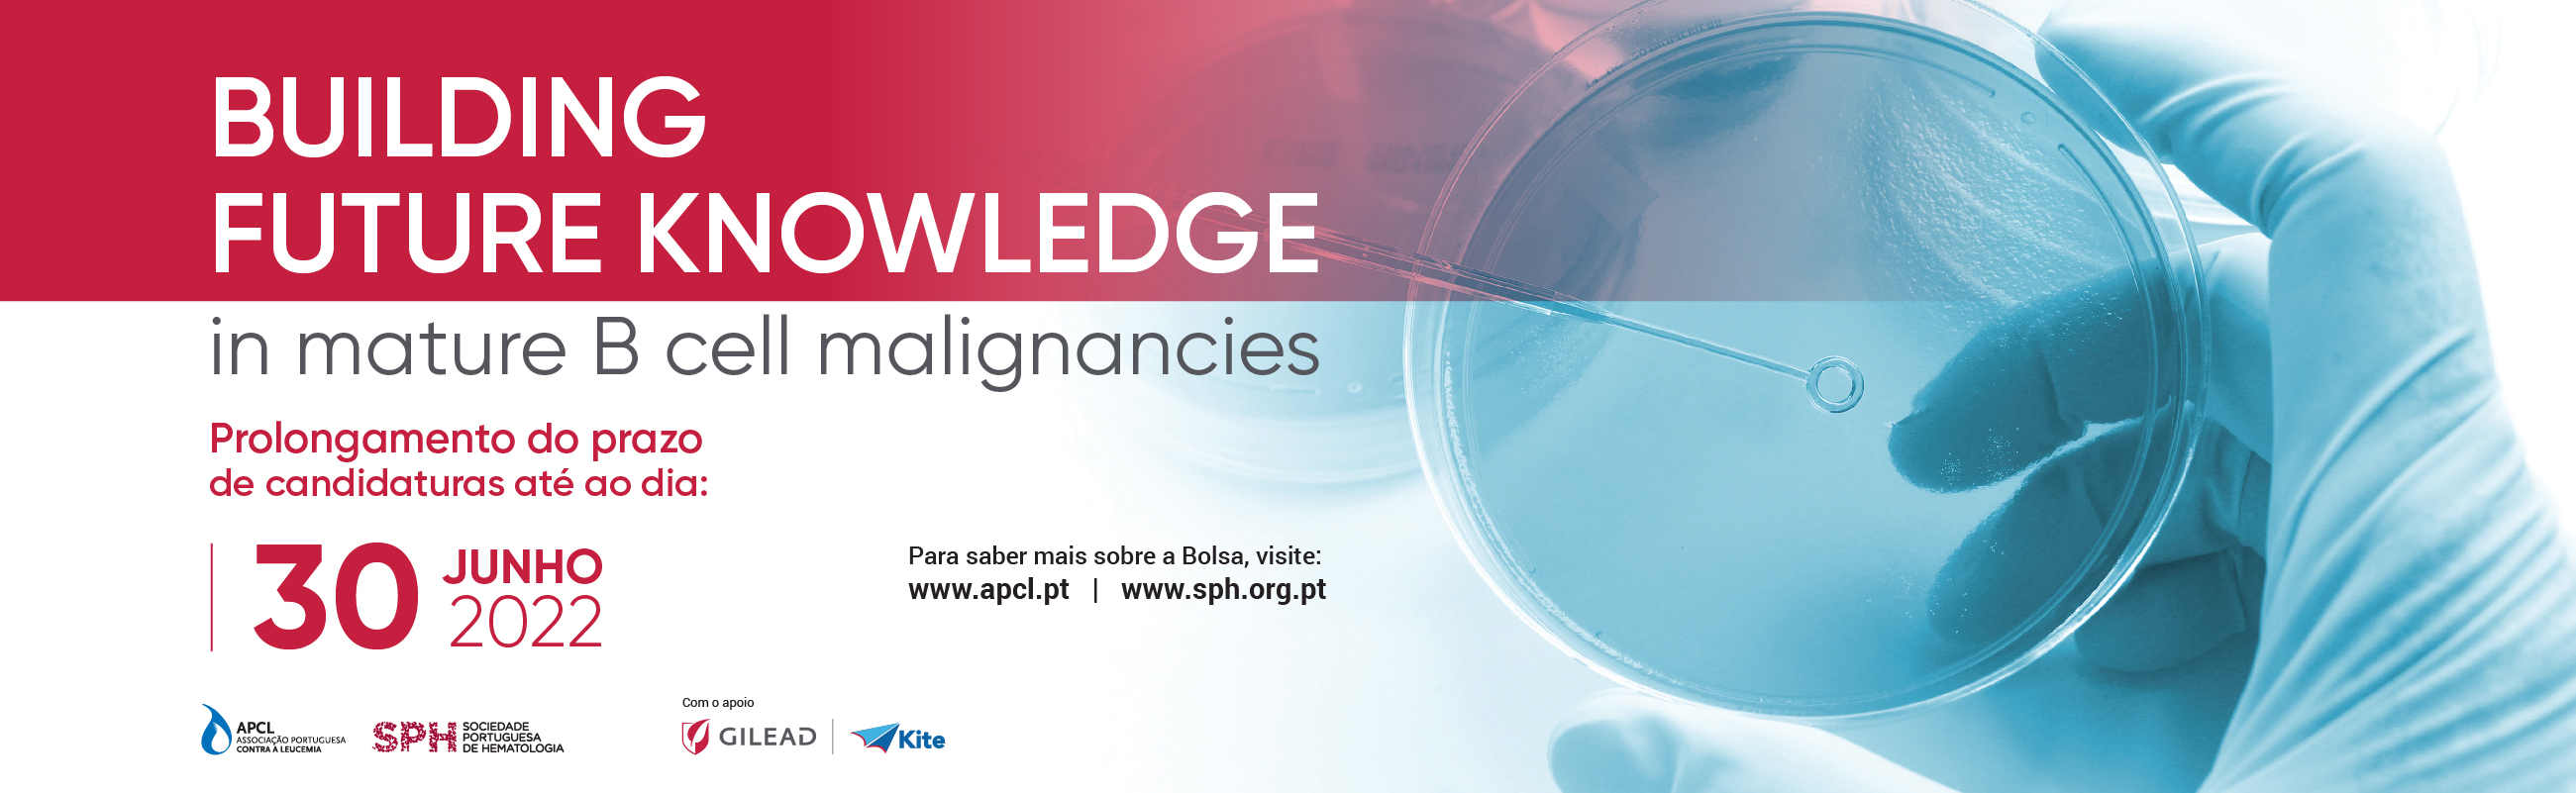 Bolsa APCL, SPH e Gilead: Building Future Knowledge in mature B cell malignacies